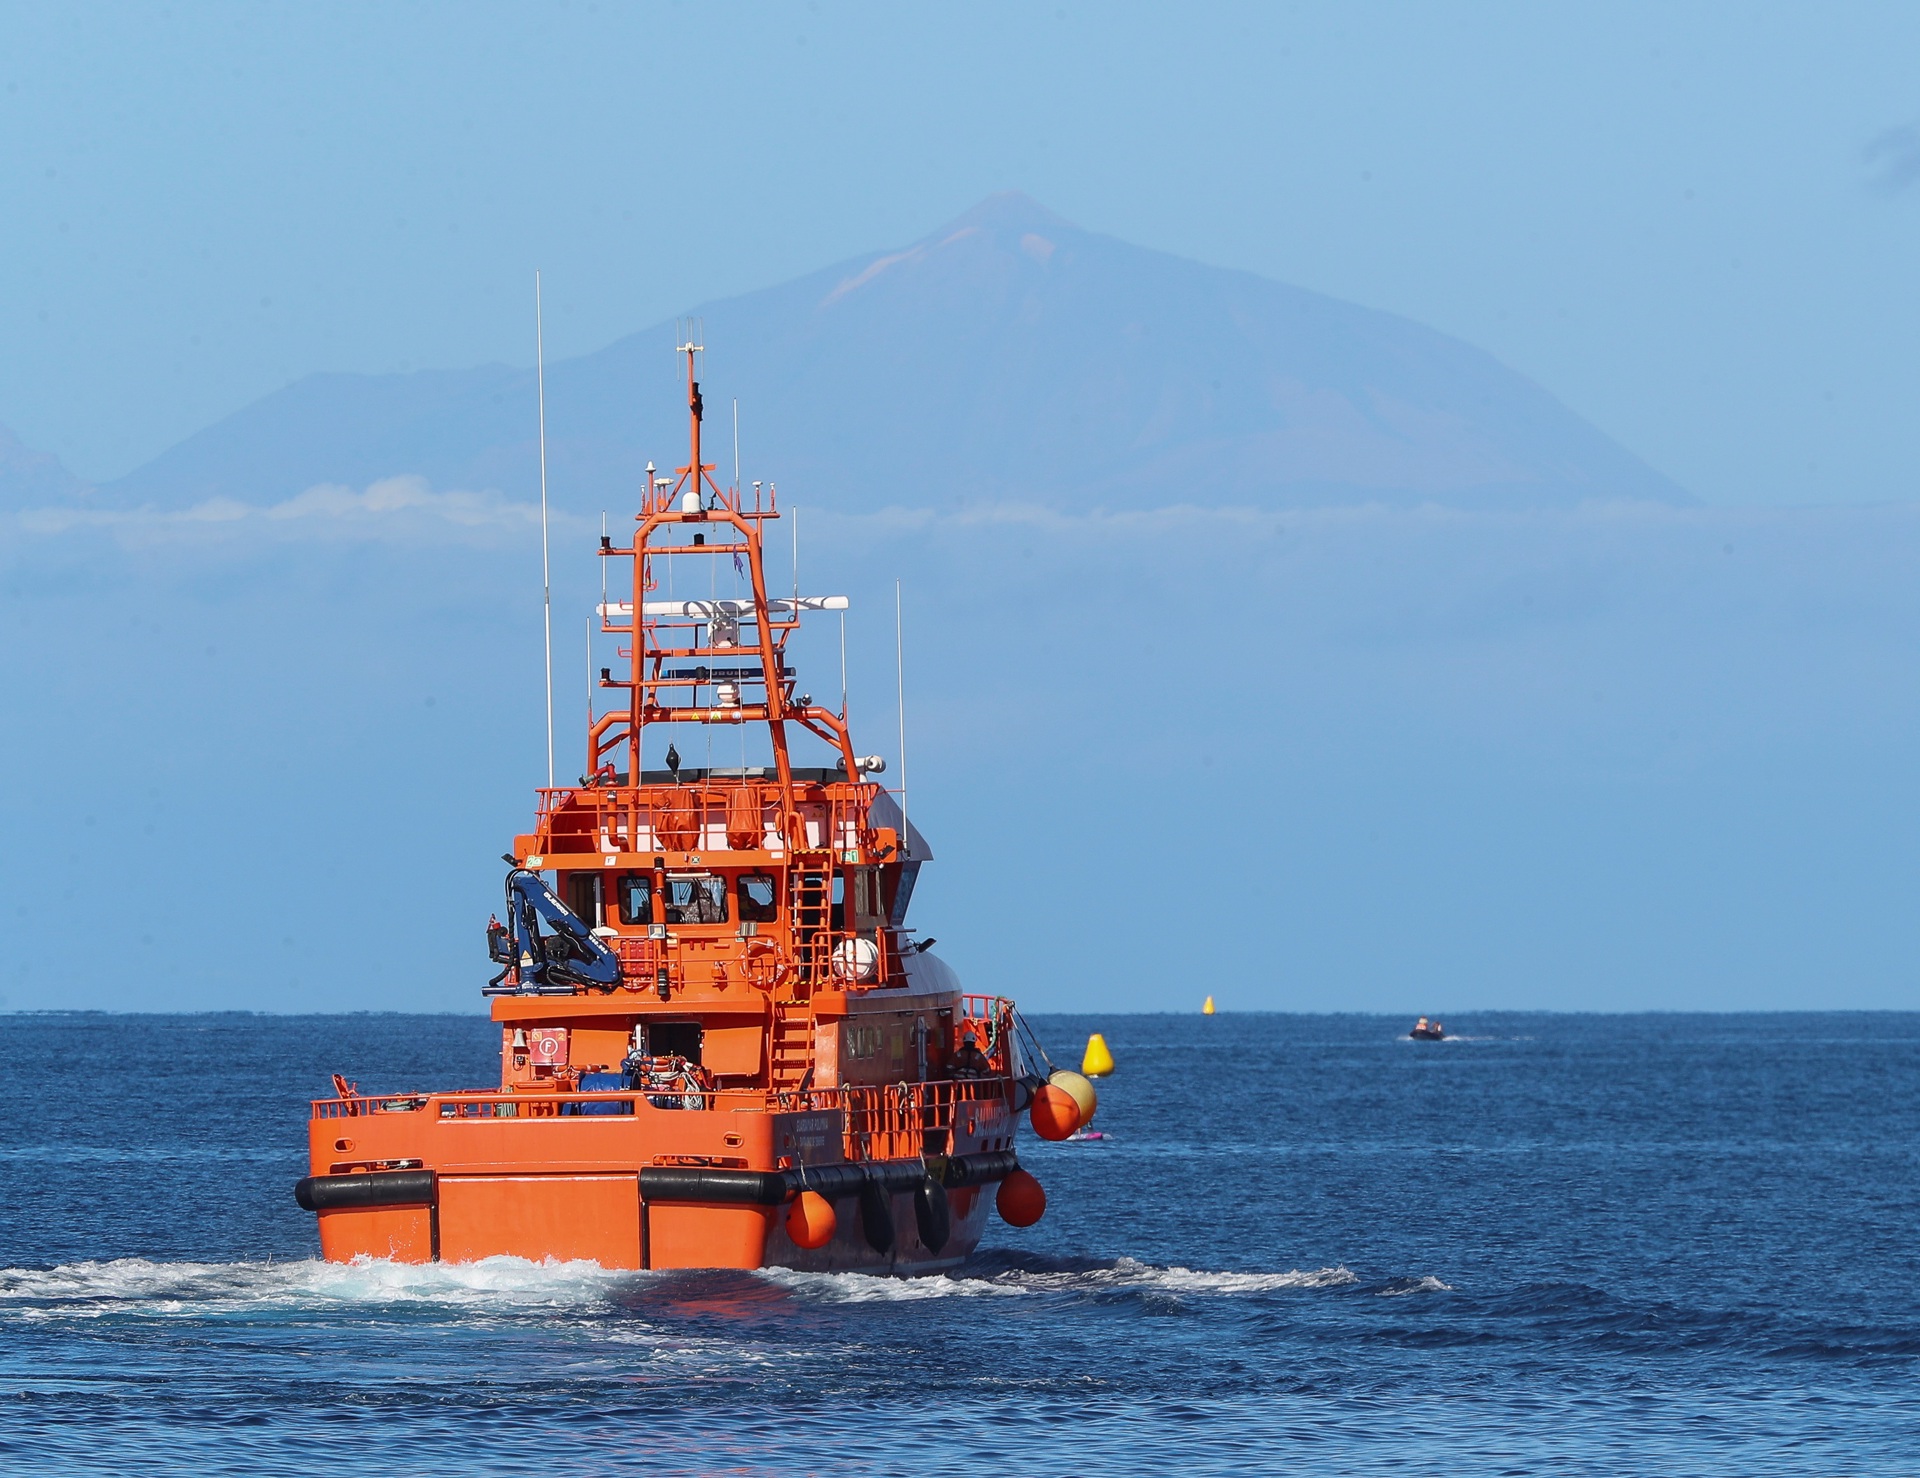 Foto de archivo de una embarcación de Salvamento Marítimo de servicio en el sur de Gran Canaria. EFE/ Elvira Urquijo A.